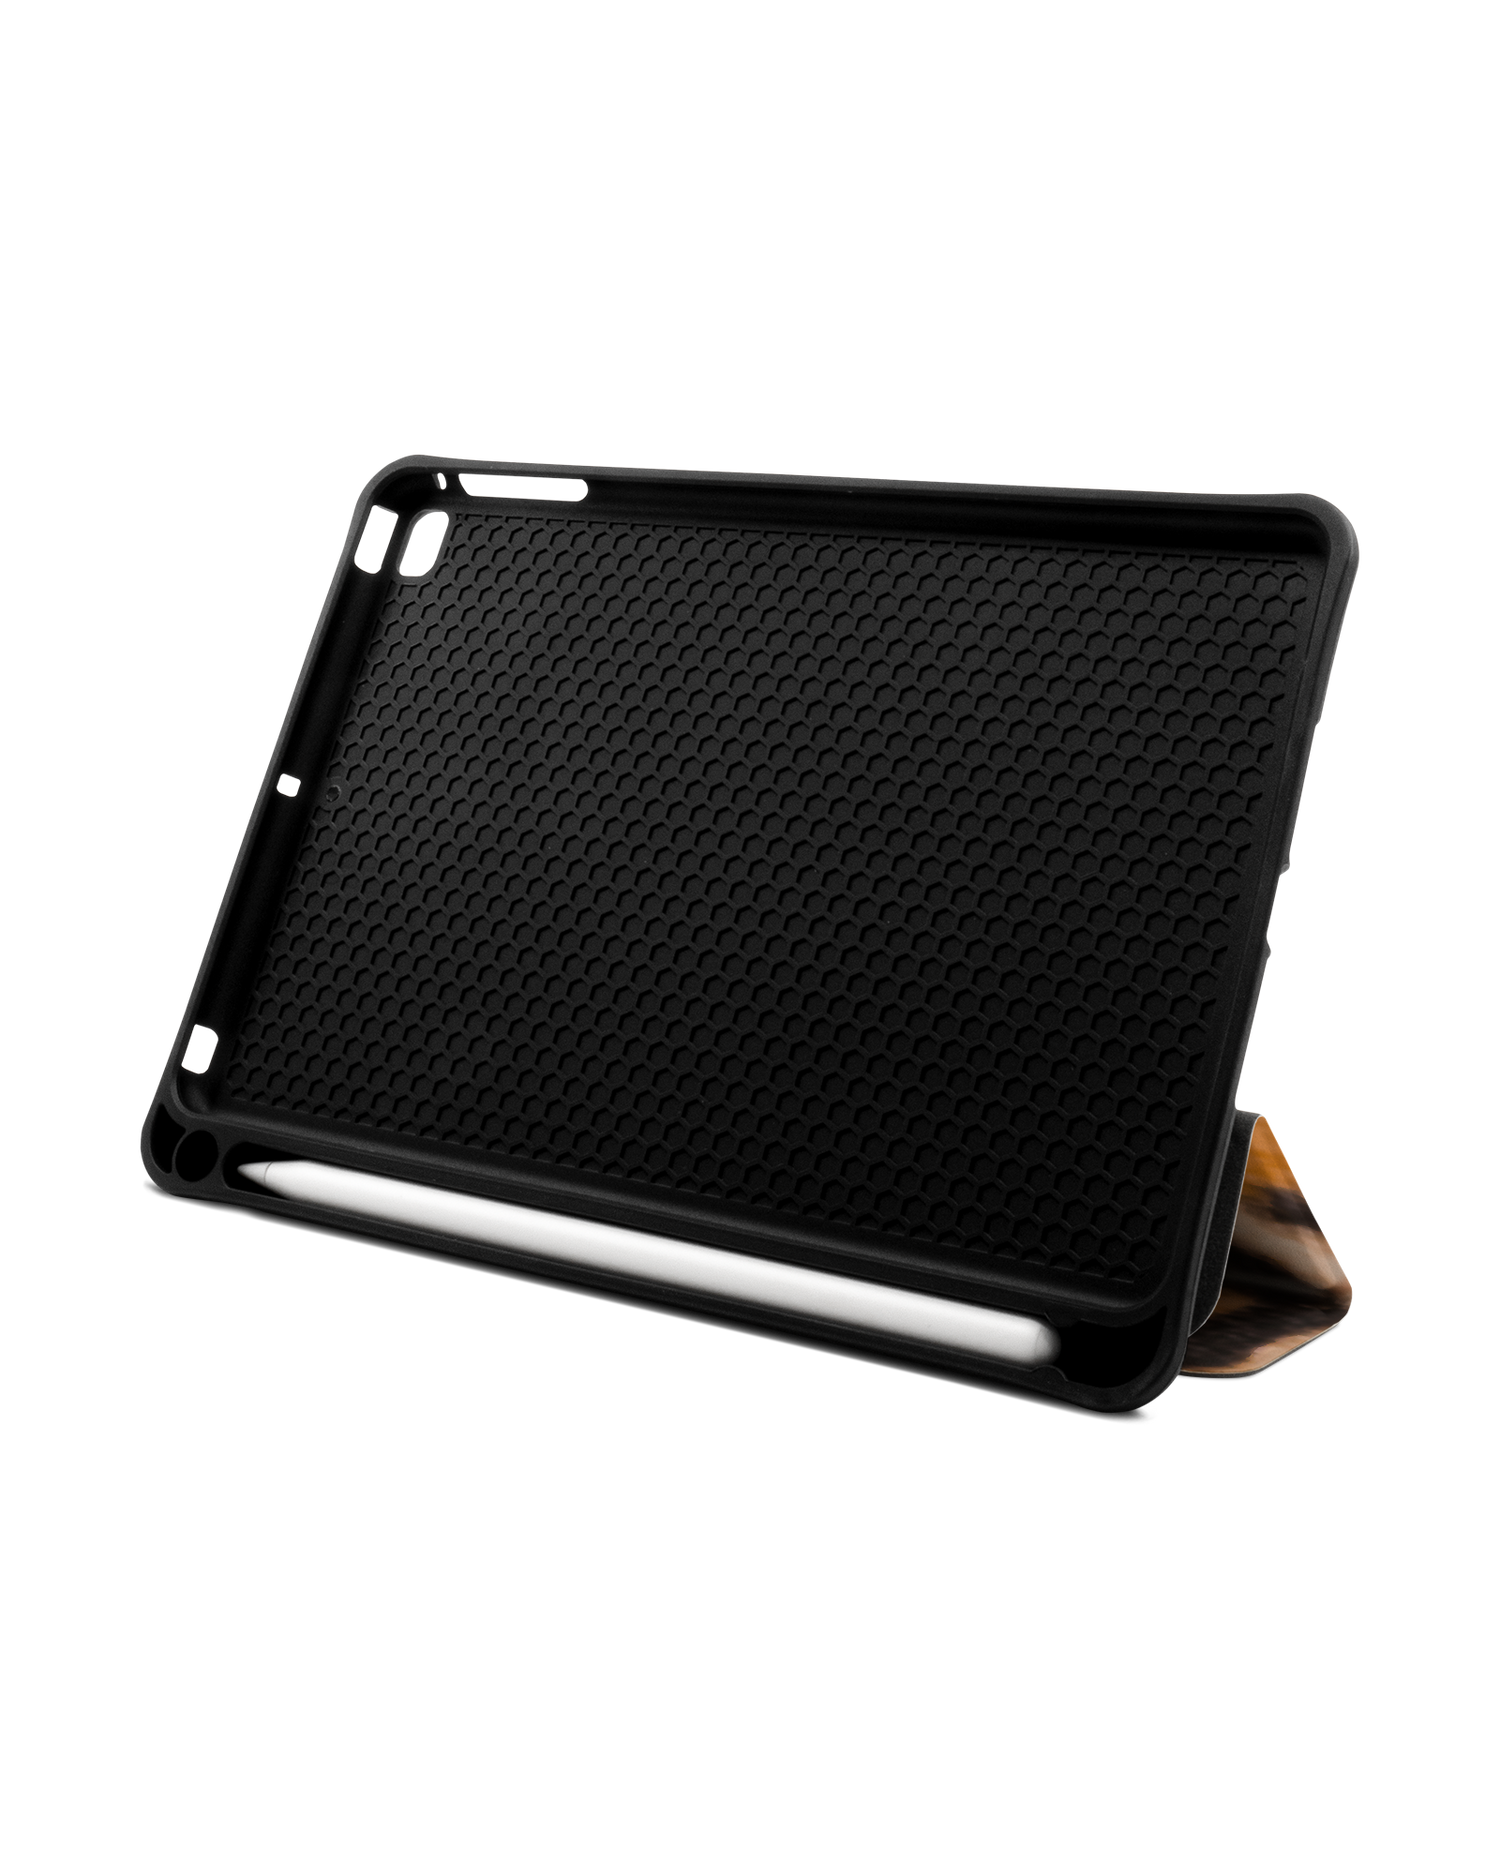 Leopard Pattern iPad Hülle mit Stifthalter Apple iPad mini 5 (2019): Aufgestellt im Querformat von vorne